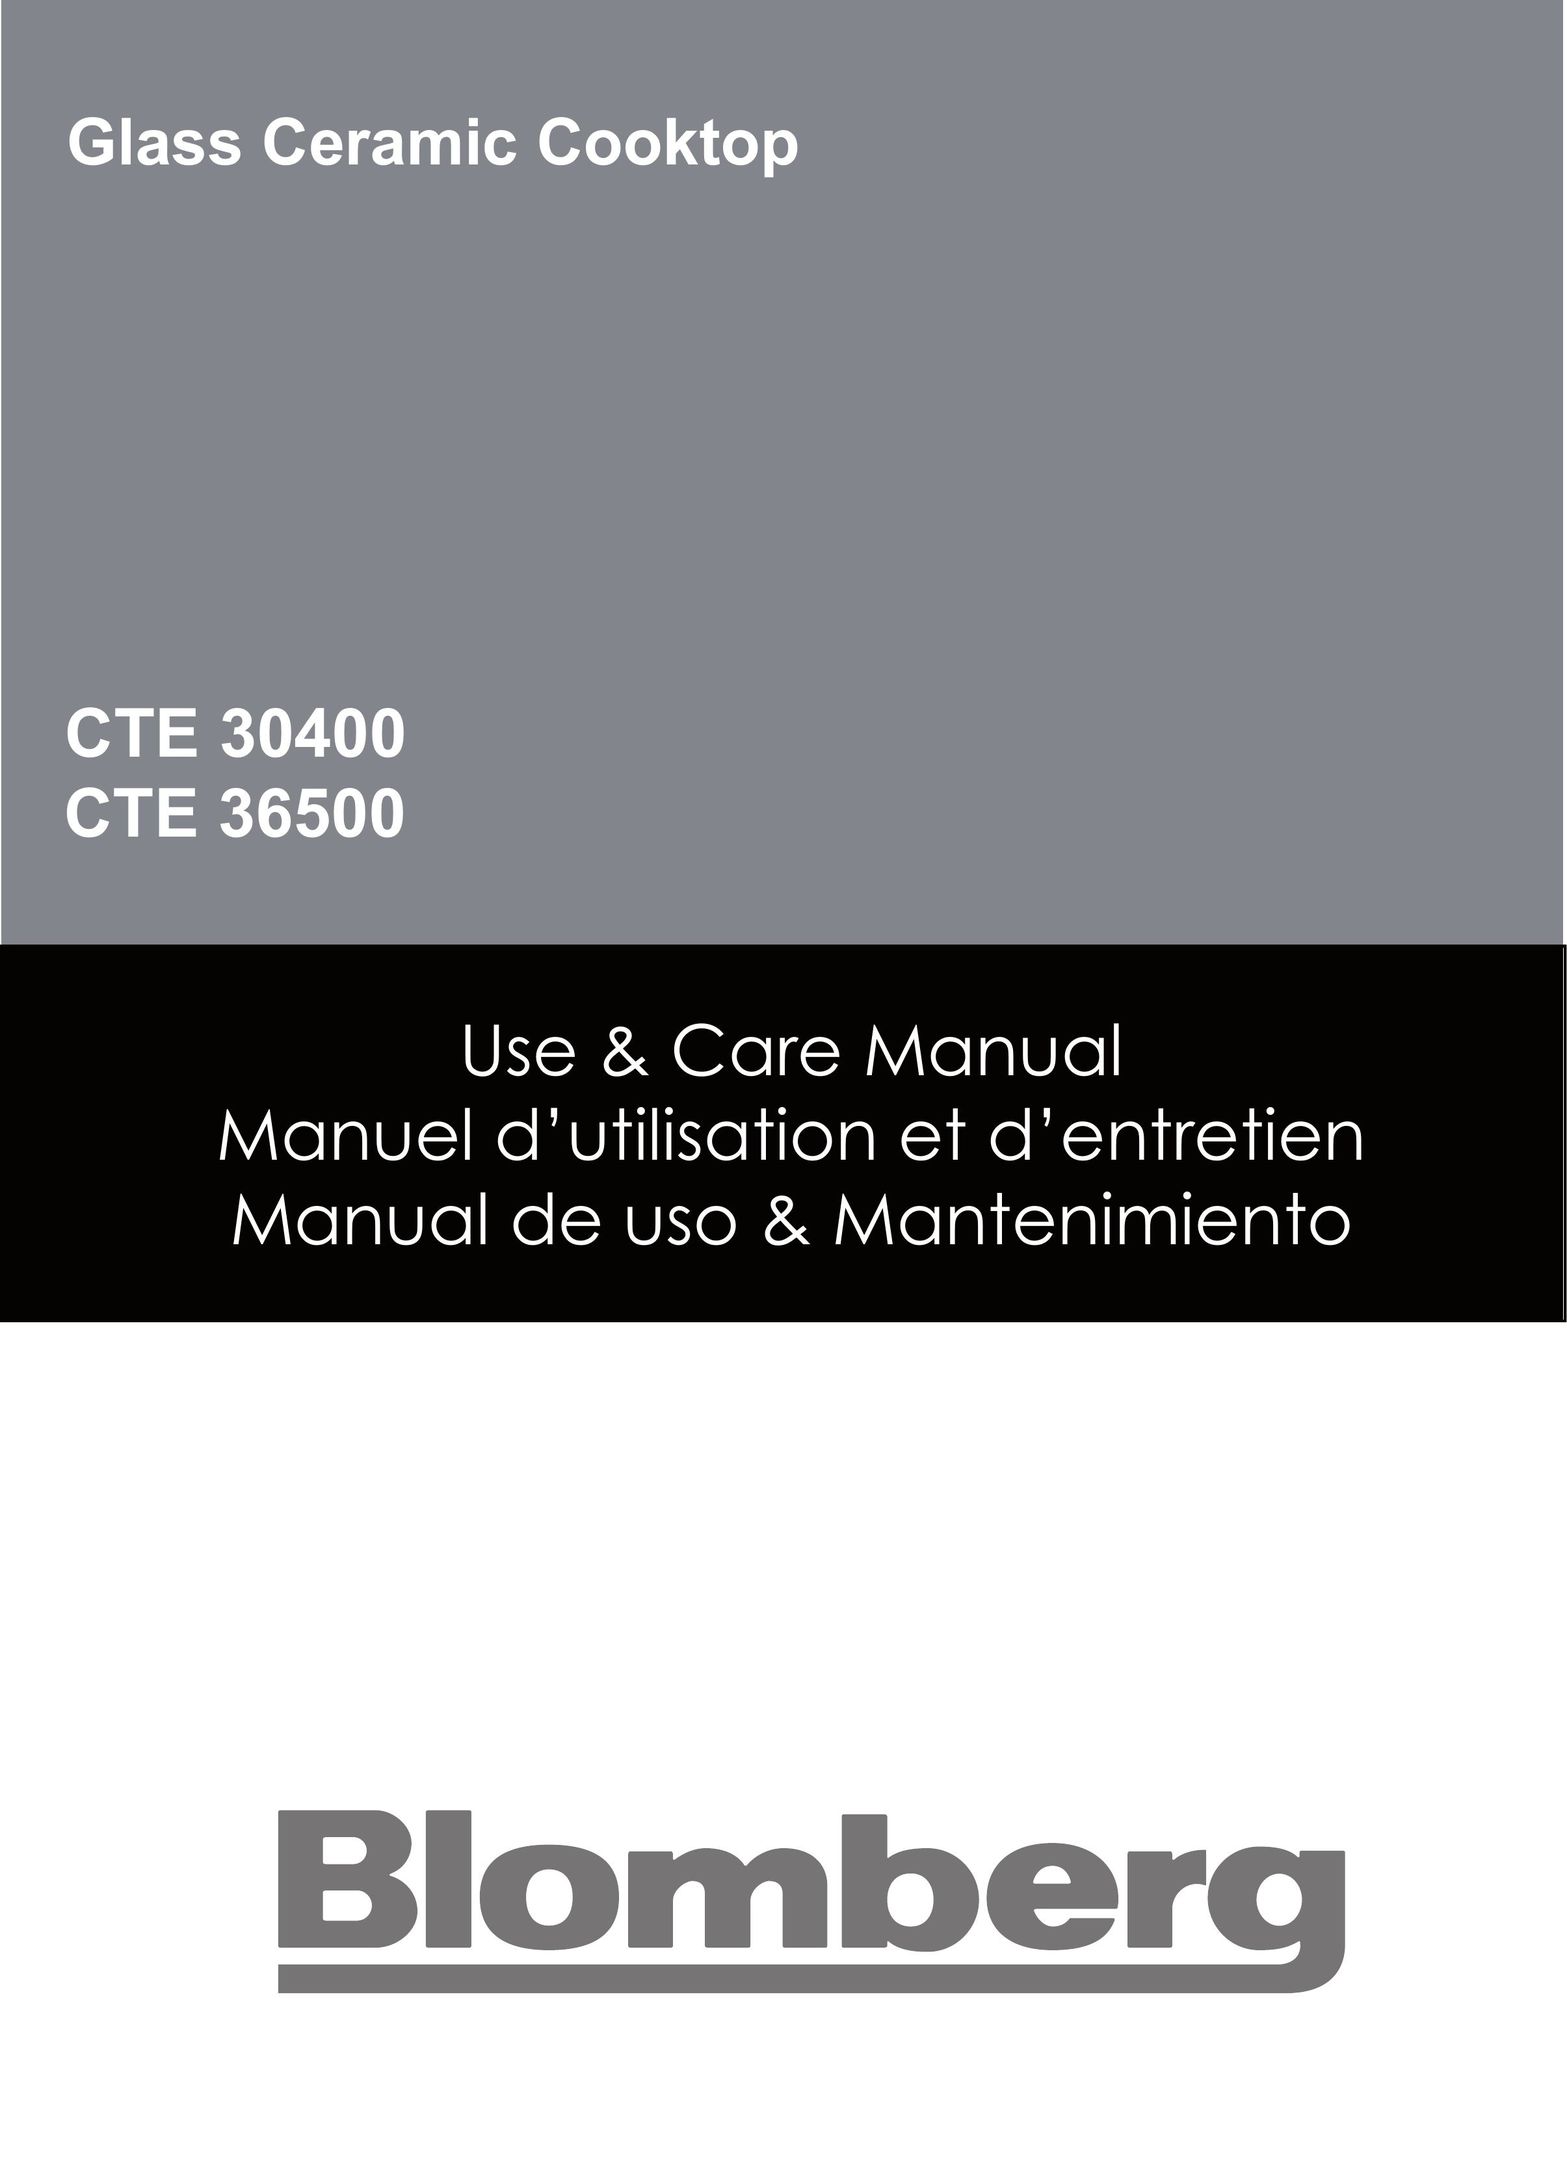 Blomberg CTE 36500 Cooktop User Manual